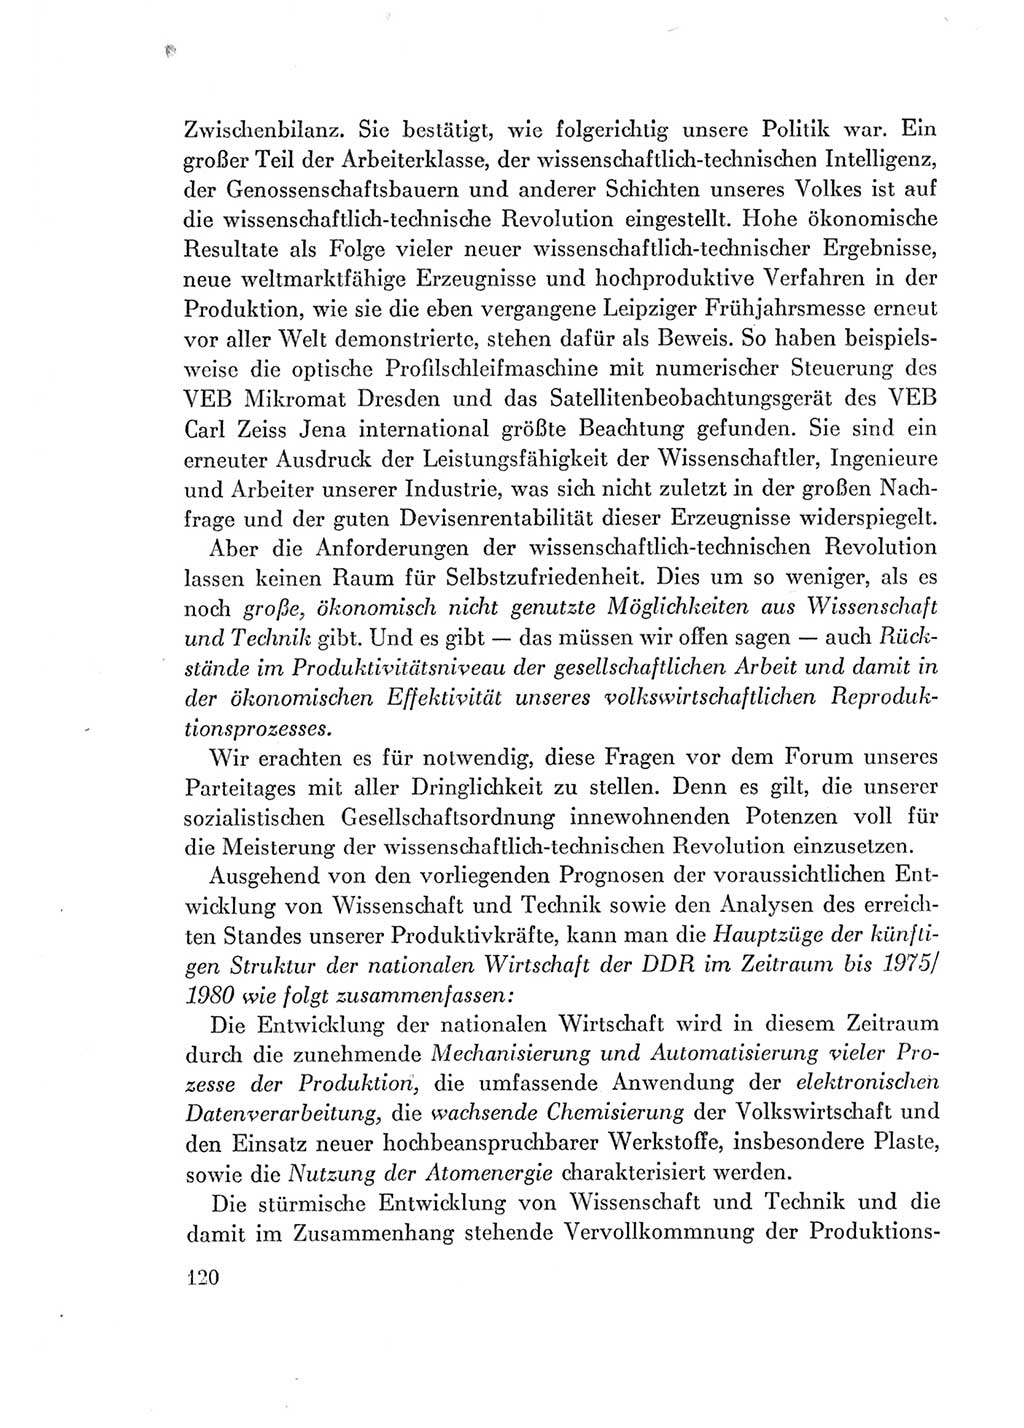 Protokoll der Verhandlungen des Ⅶ. Parteitages der Sozialistischen Einheitspartei Deutschlands (SED) [Deutsche Demokratische Republik (DDR)] 1967, Band Ⅰ, Seite 120 (Prot. Verh. Ⅶ. PT SED DDR 1967, Bd. Ⅰ, S. 120)